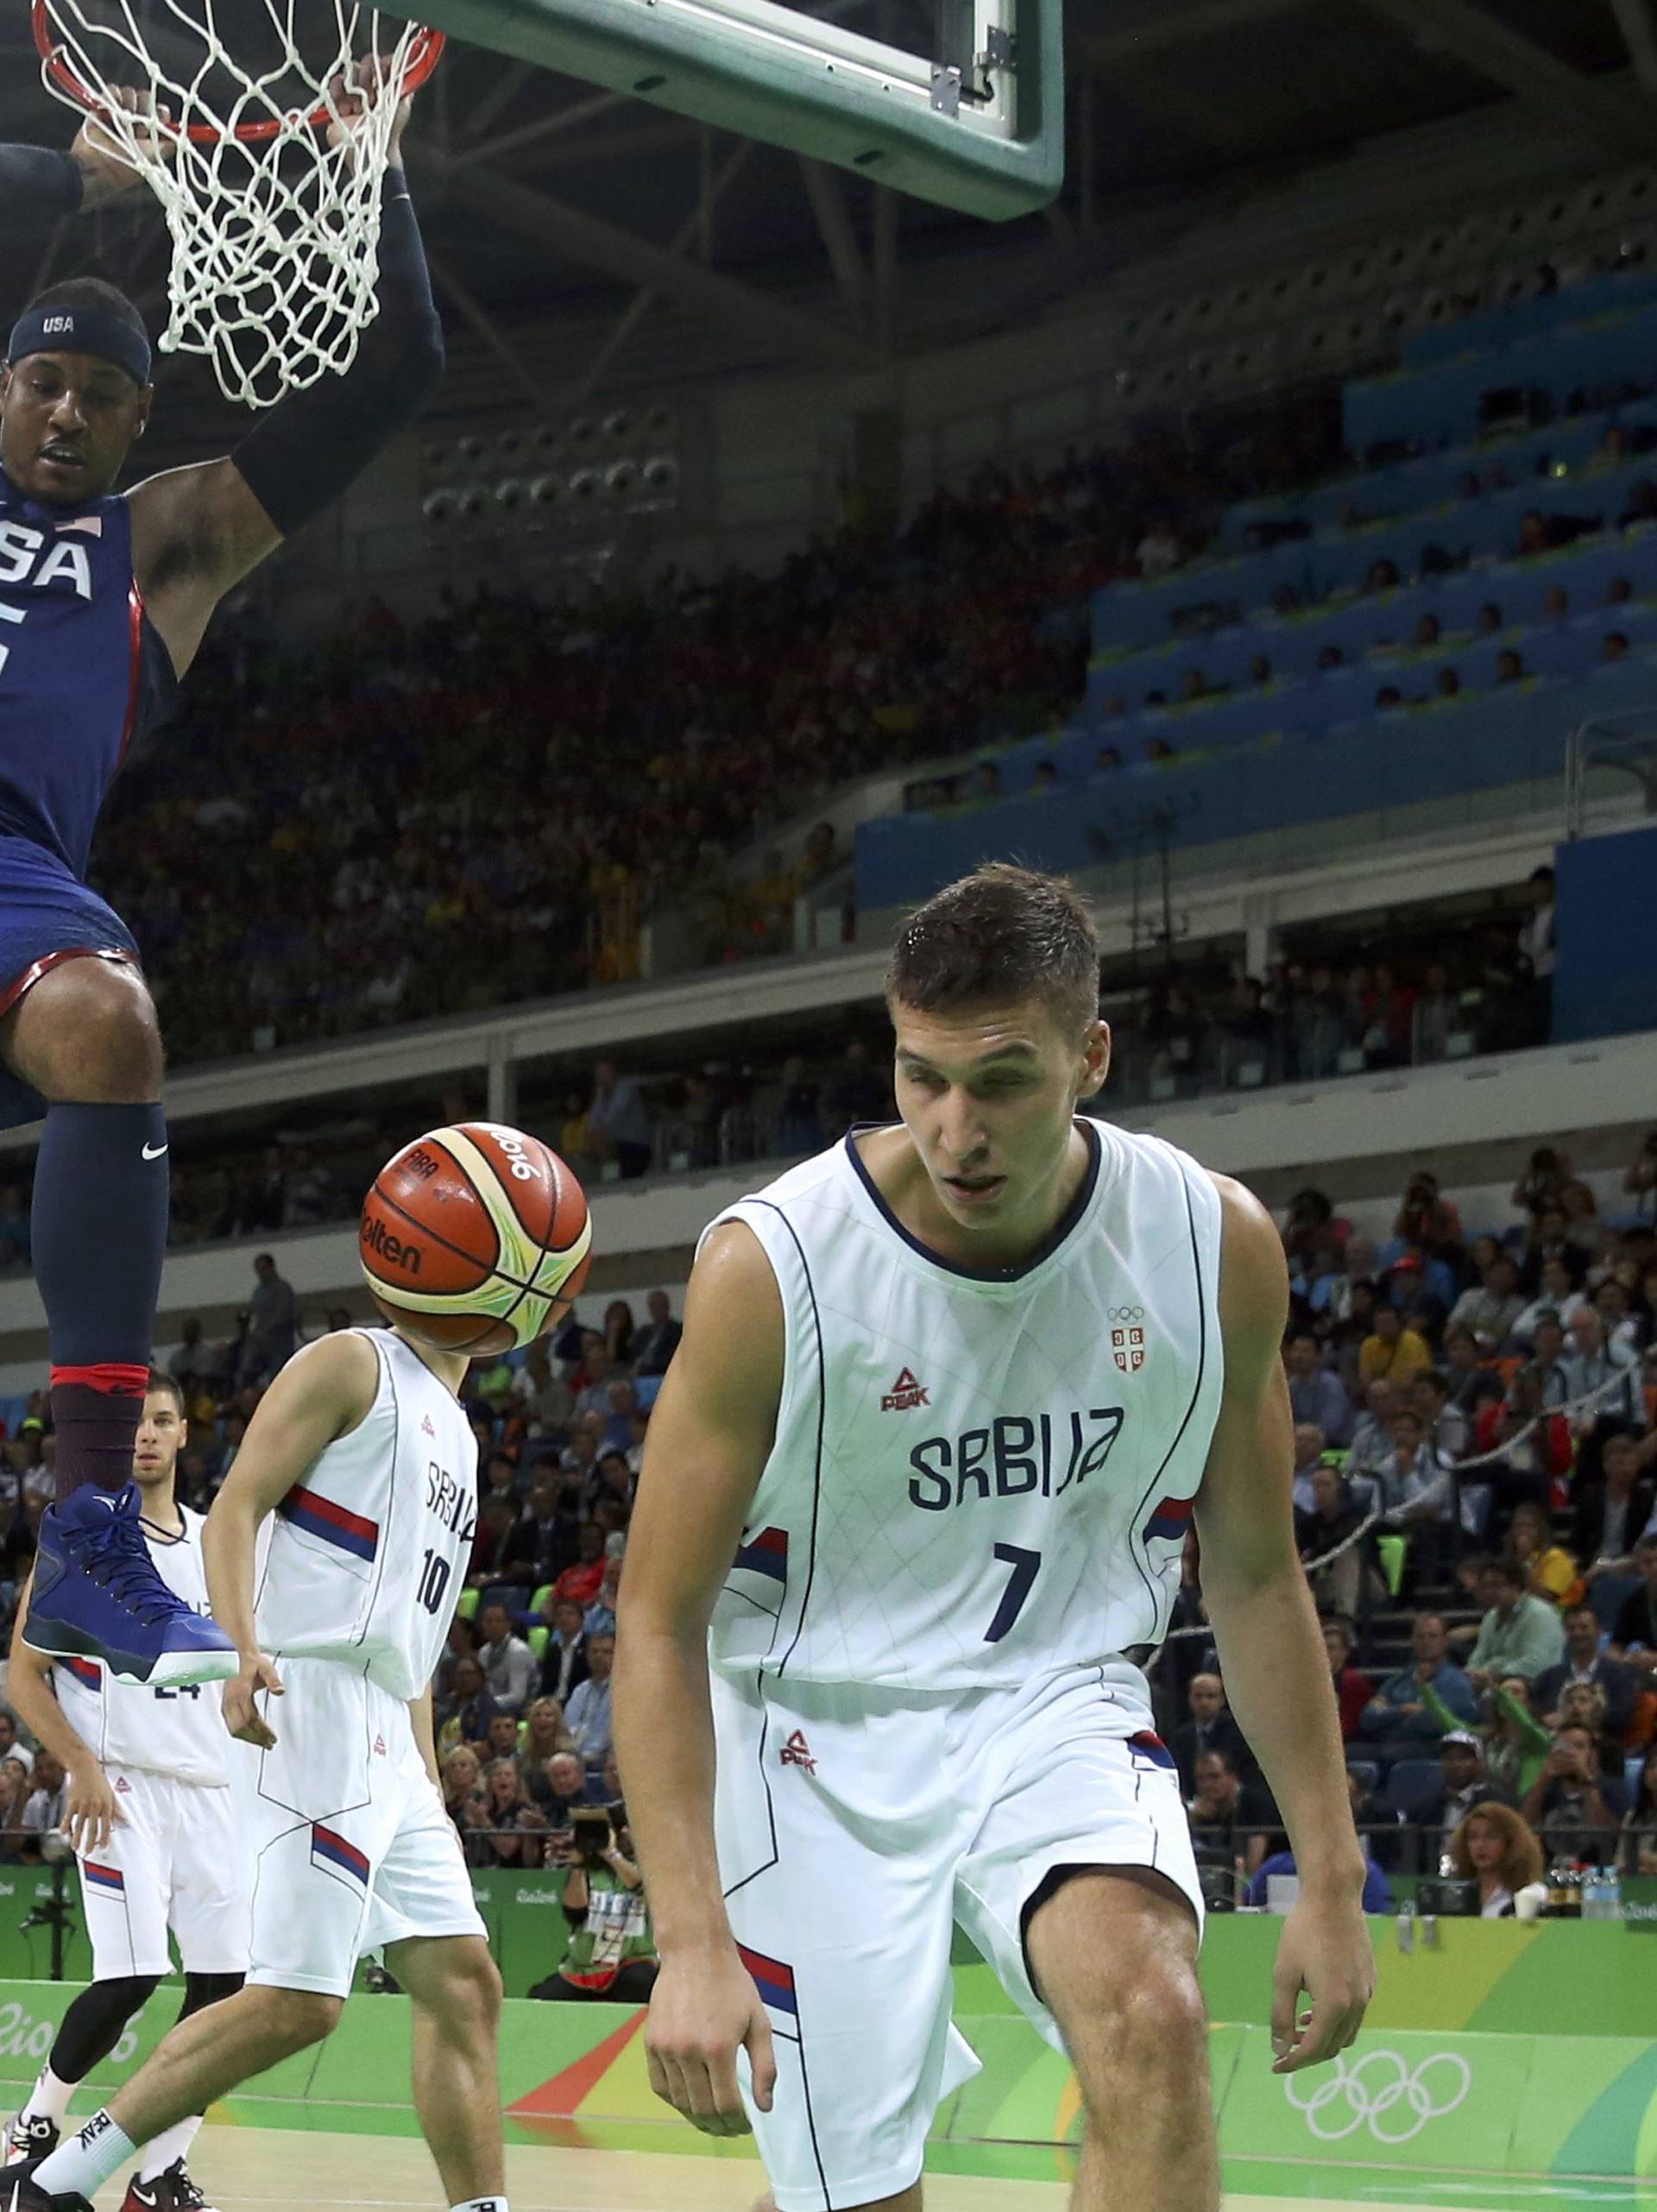 Basketball - Men's Gold Medal Game Serbia v USA 